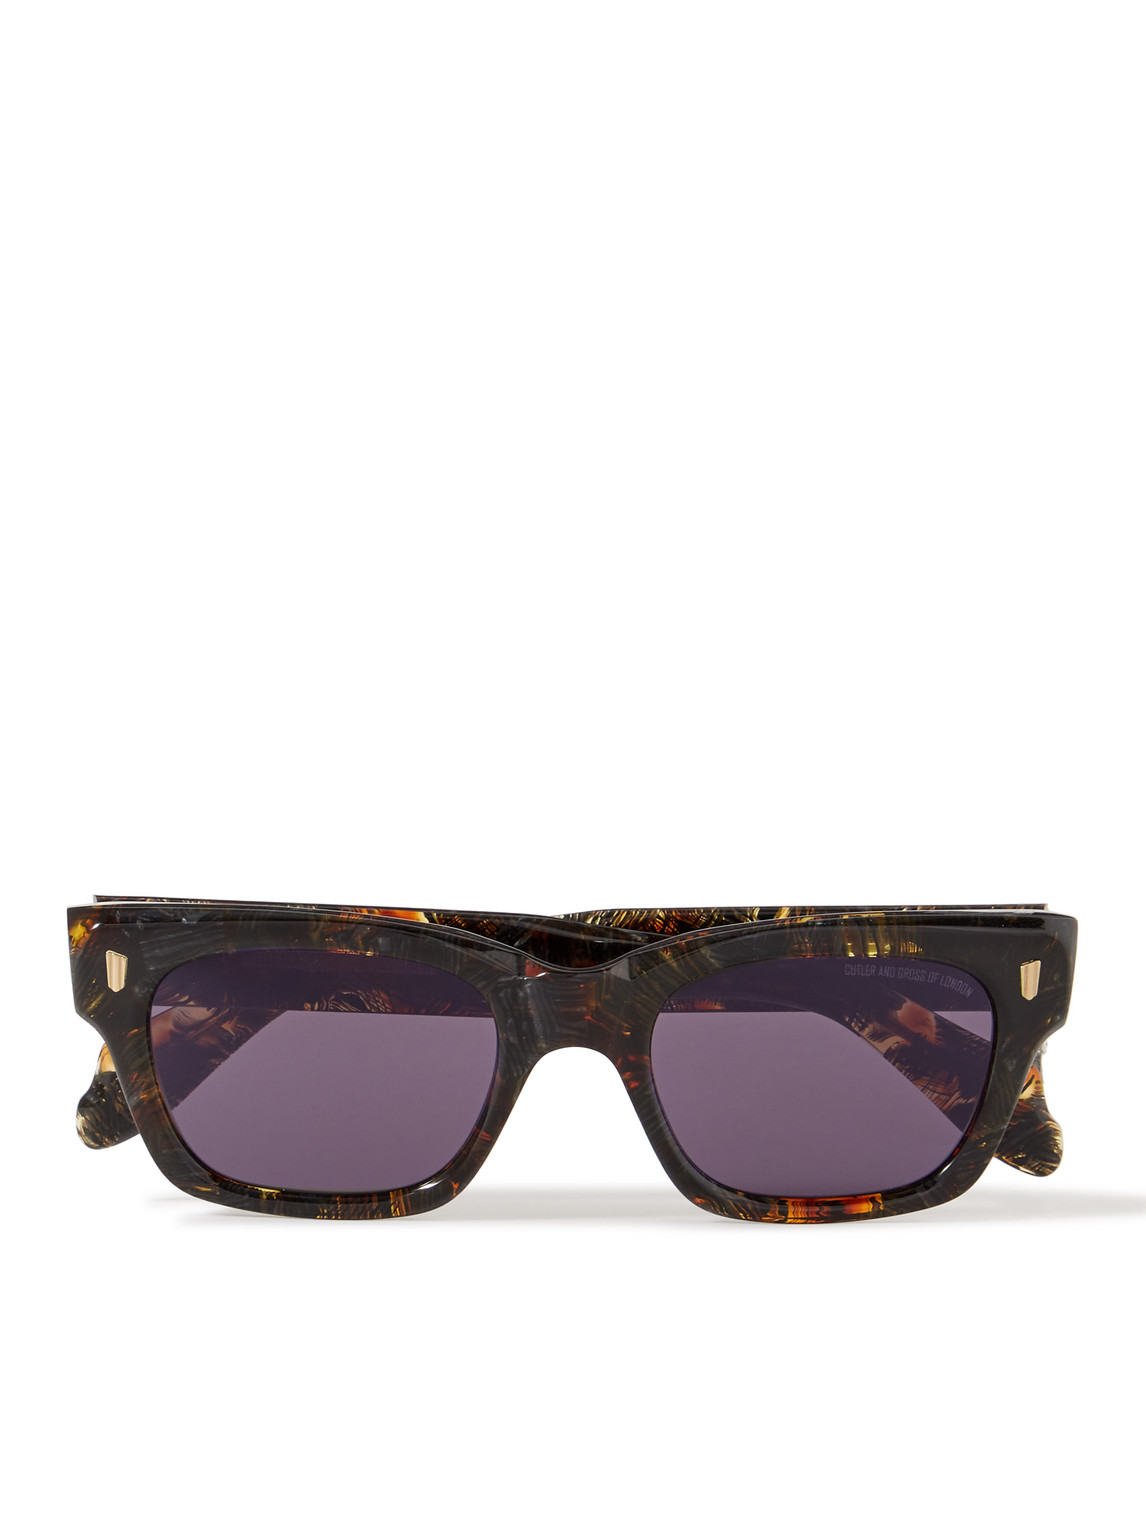 Cutler And Gross 1393 Square-frame Tortoiseshell Acetate Sunglasses